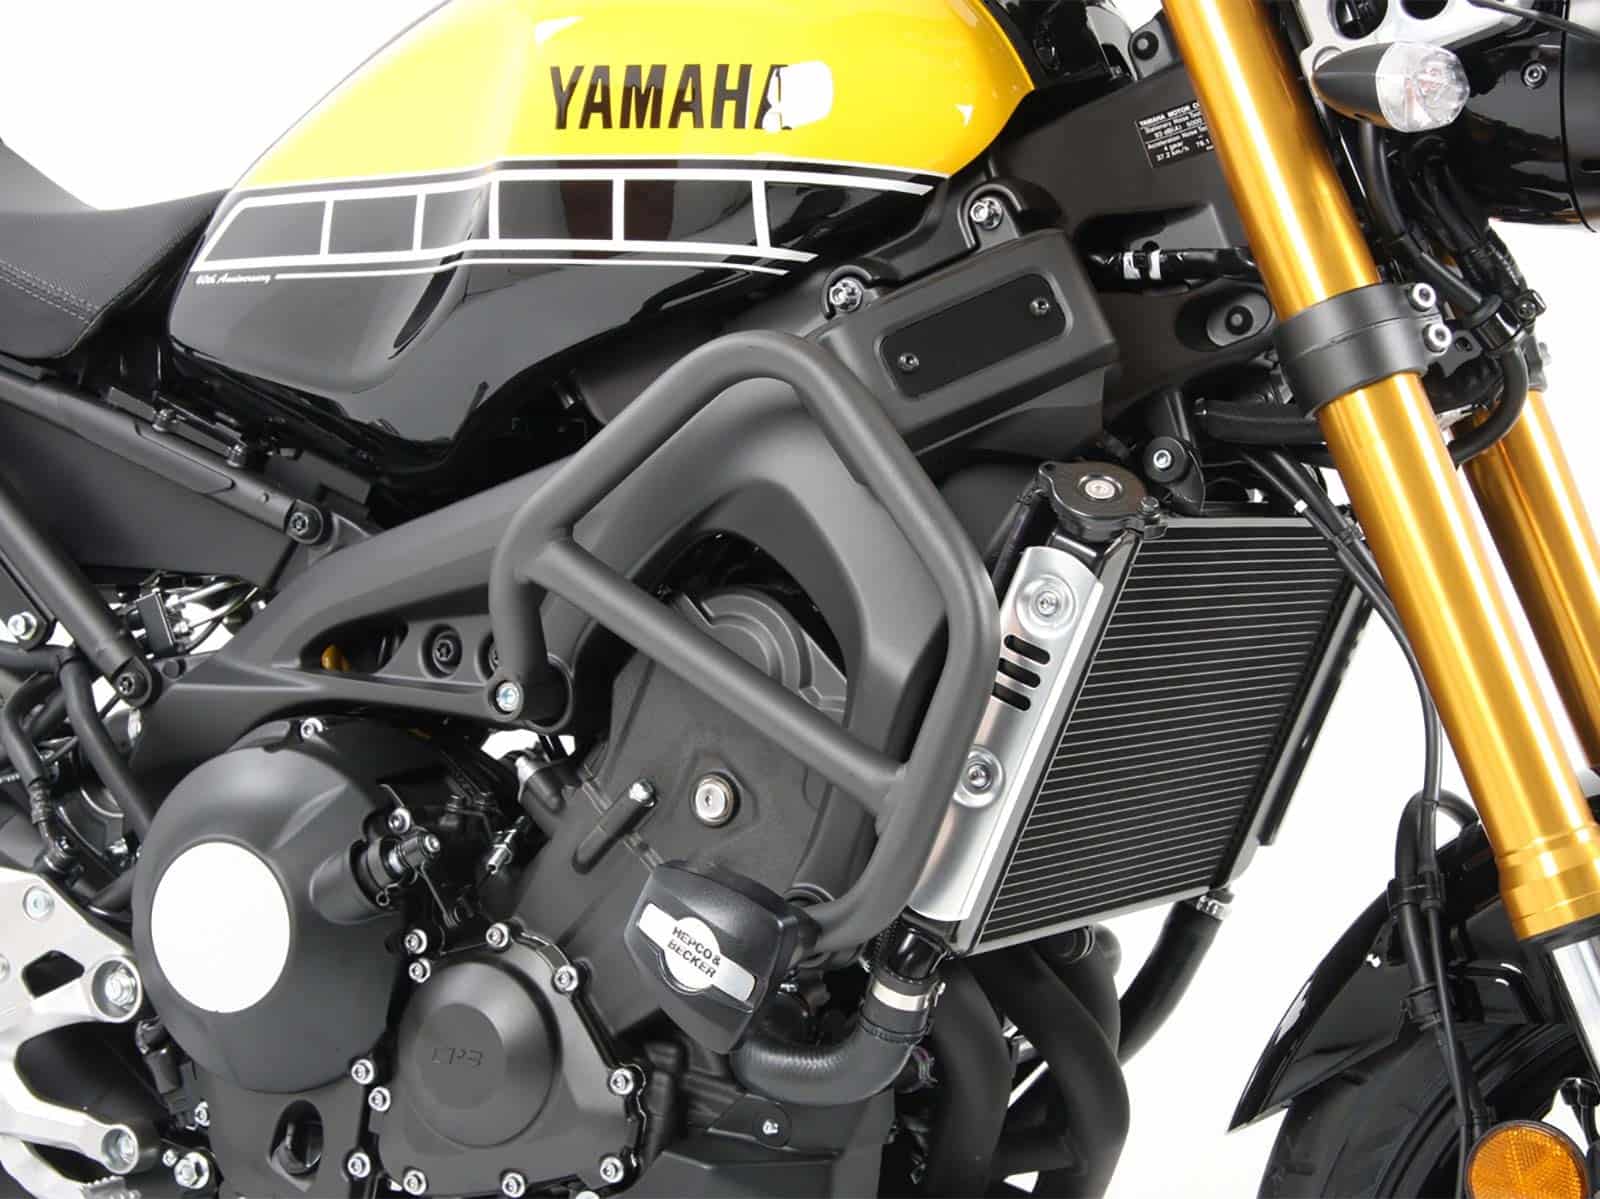 Motorschutzbügel inkl. Protectionpad anthrazit für Yamaha XSR 900 (2016-2021)